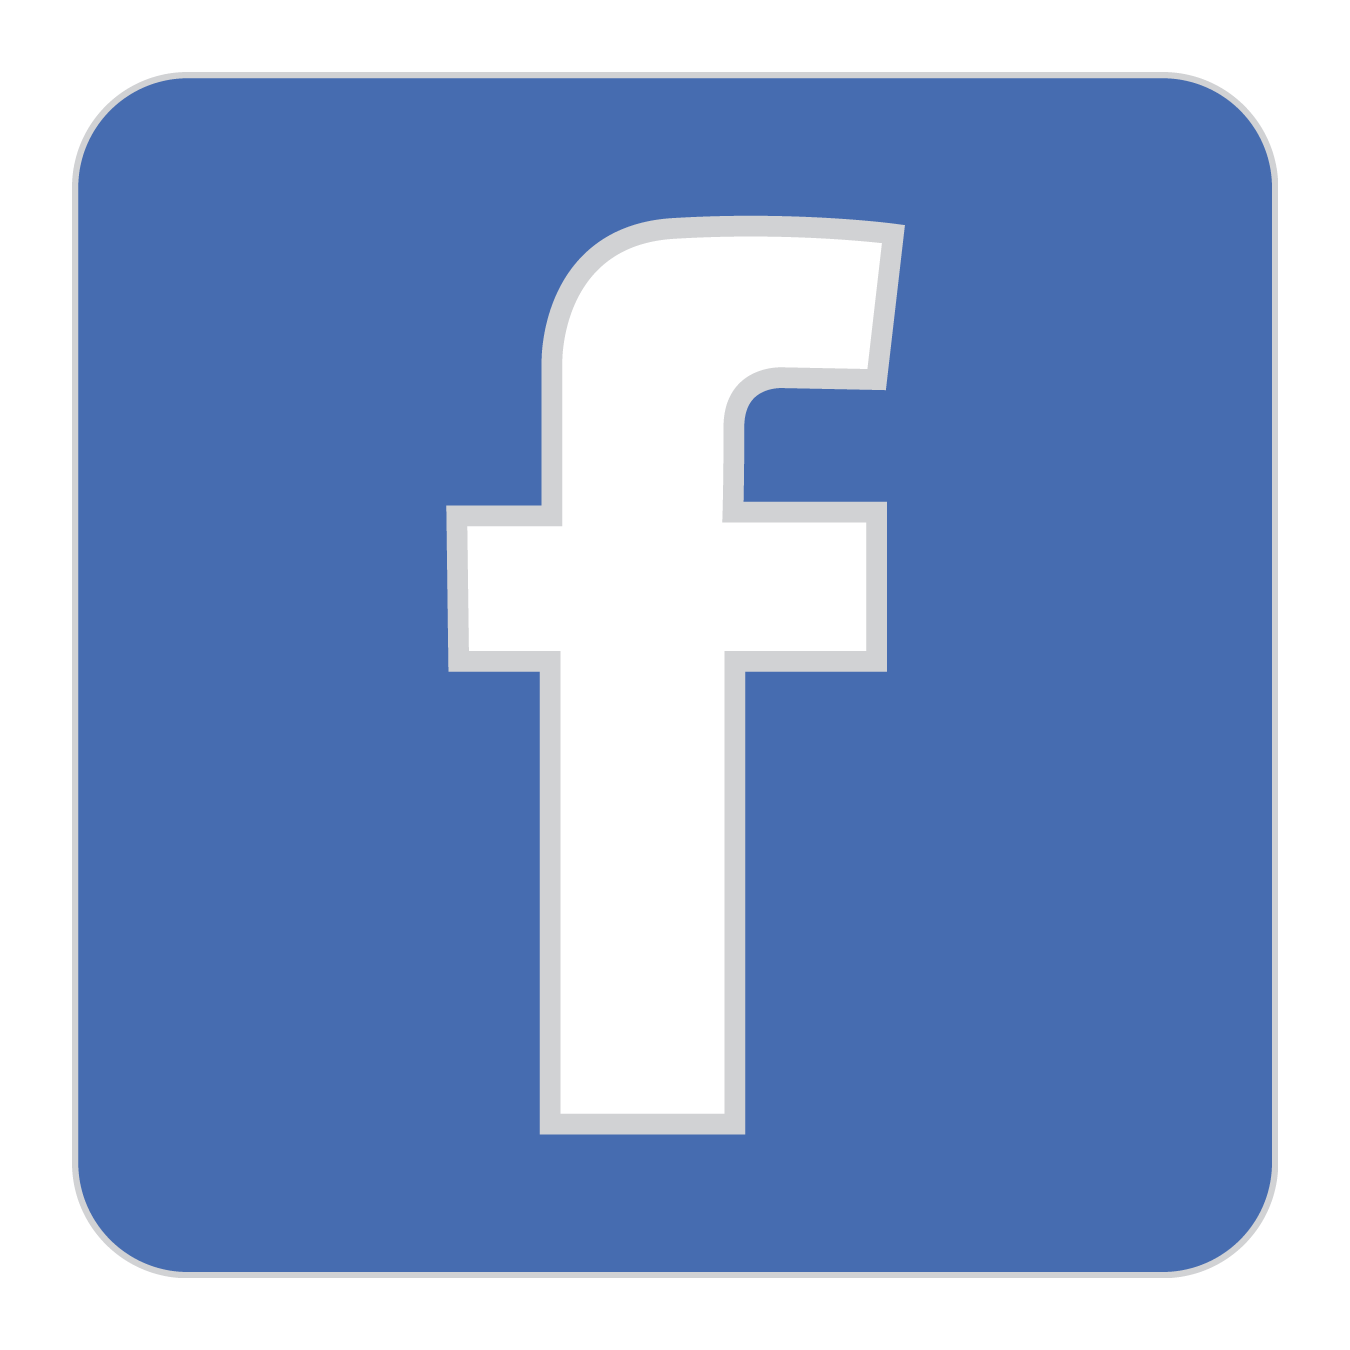 Фейсбук. Facebook логотип. Новый значок Фейсбук. Икона Фейсбук. Ecapusta com